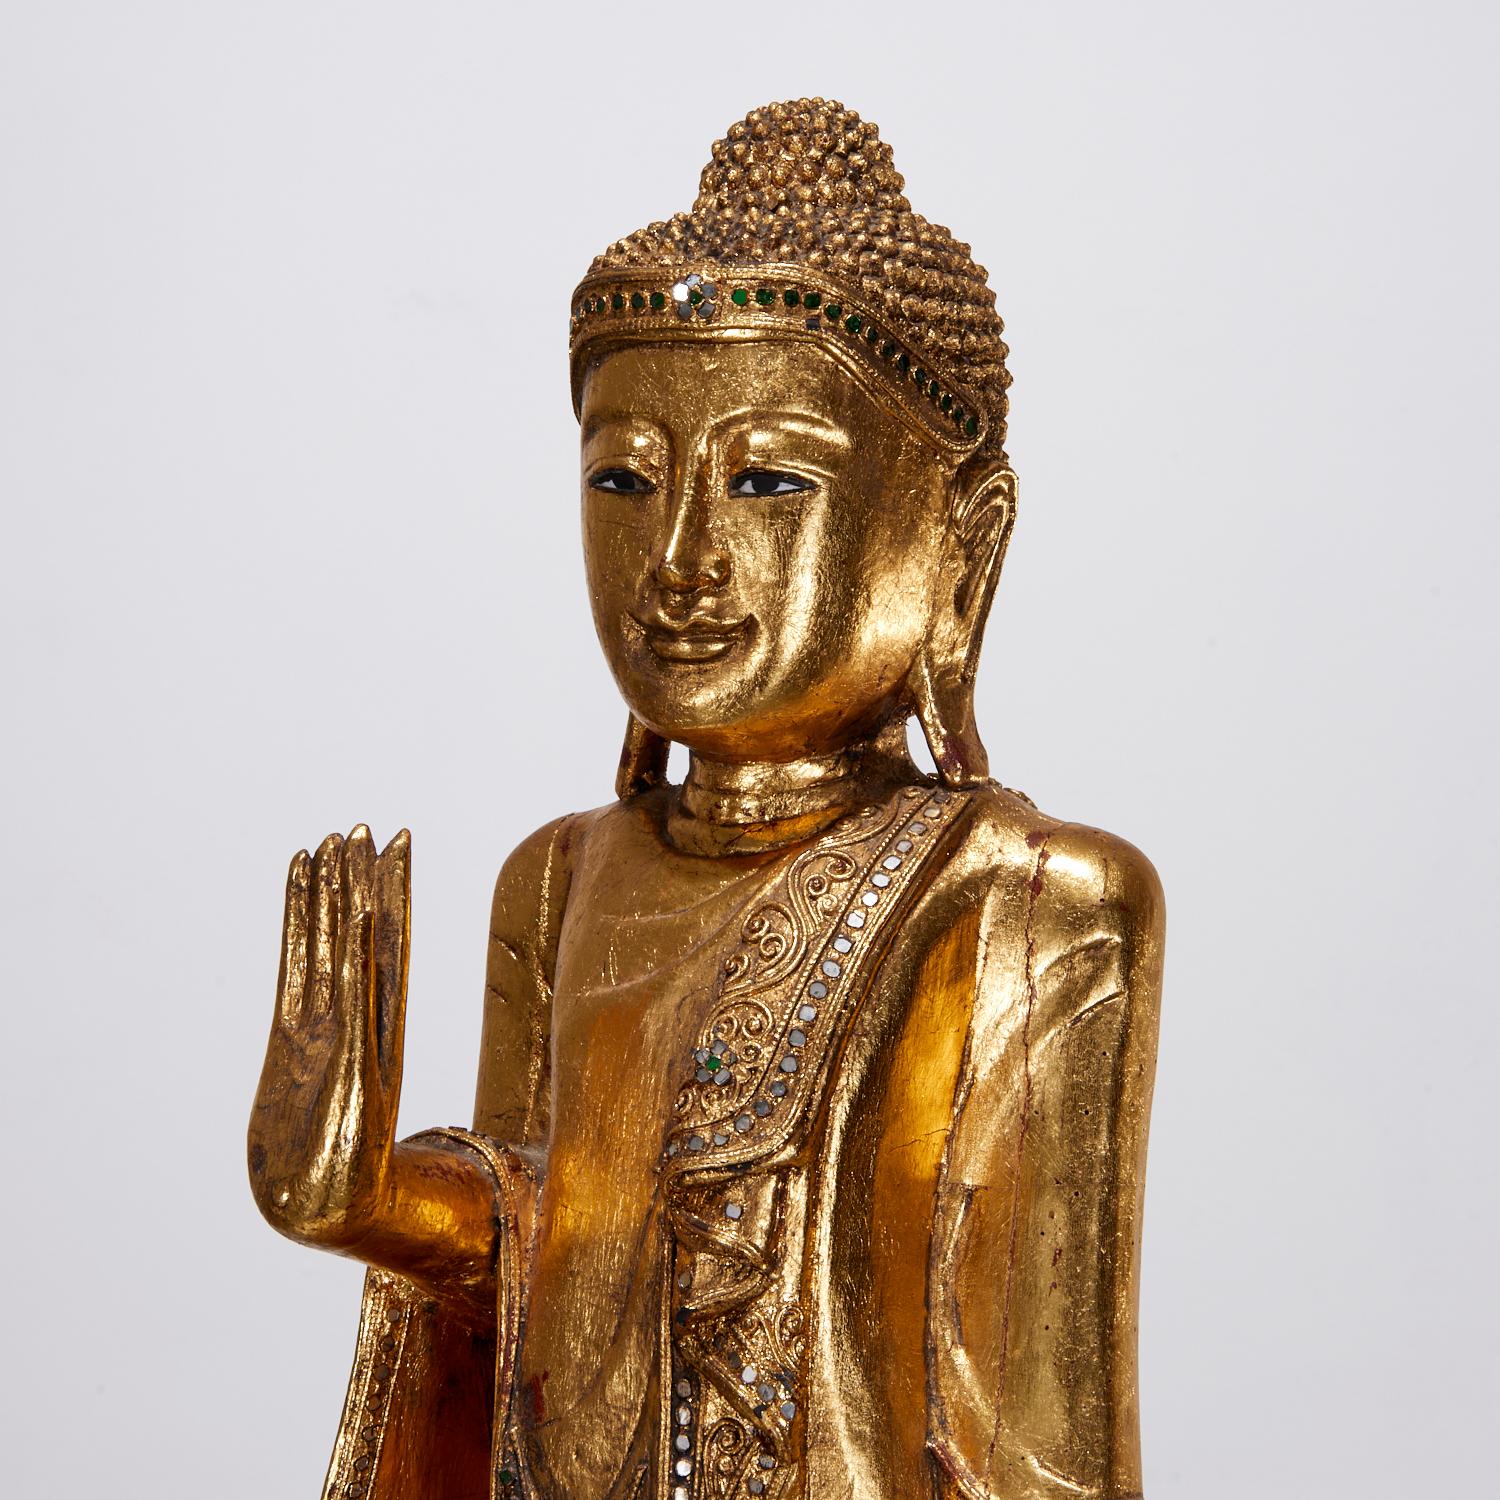 Eine schöne Vintage 20. Jh., geschnitzt und vergoldet stehend birmanischen Mandalay Buddha, mit grün und klar gespiegelt eingelegten Details, auf hölzernen Stand.

Der Buddha wird stehend mit einer nach außen gerichteten Handfläche dargestellt, die